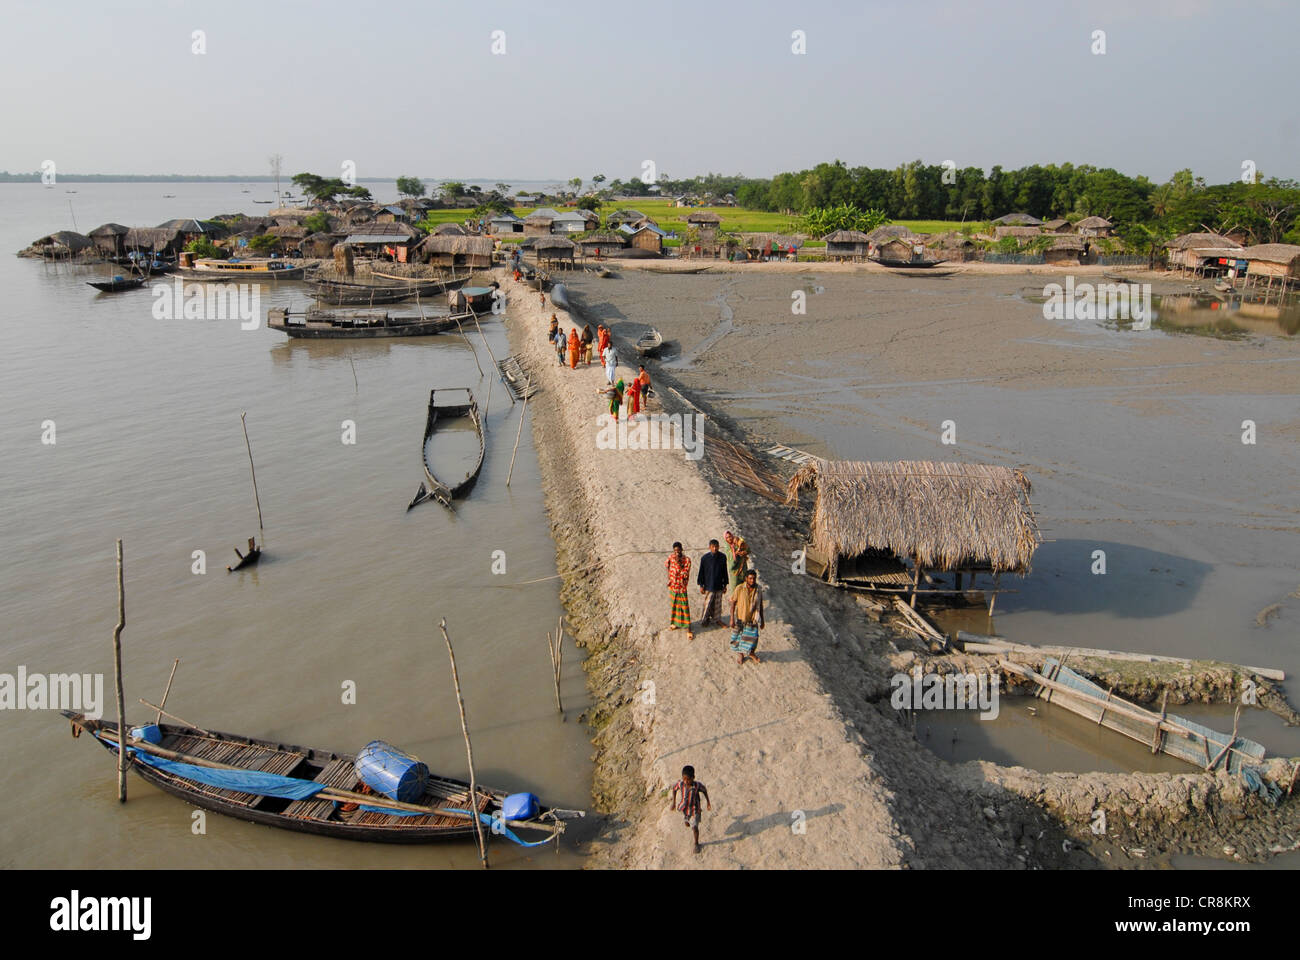 Le Bangladesh , Kalabogi Shibsha au village de la rivière à proximité du golfe du Bengale, les peuples sont plus touchés par le changement climatique, la protection de la digue de terre Inondations marée Banque D'Images